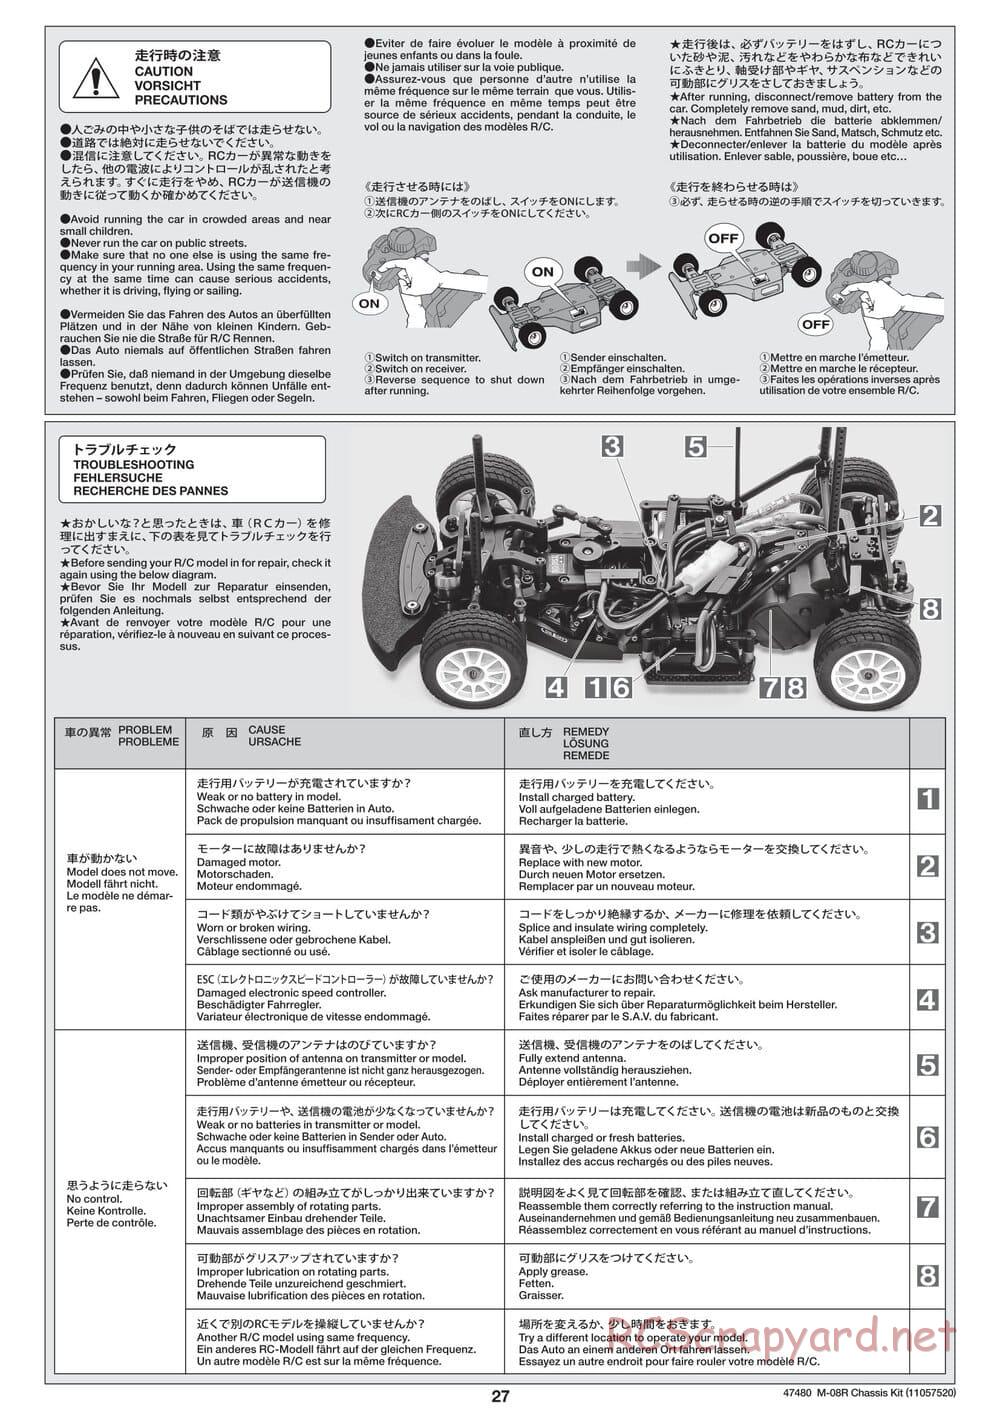 Tamiya - M-08R Chassis - Manual - Page 27